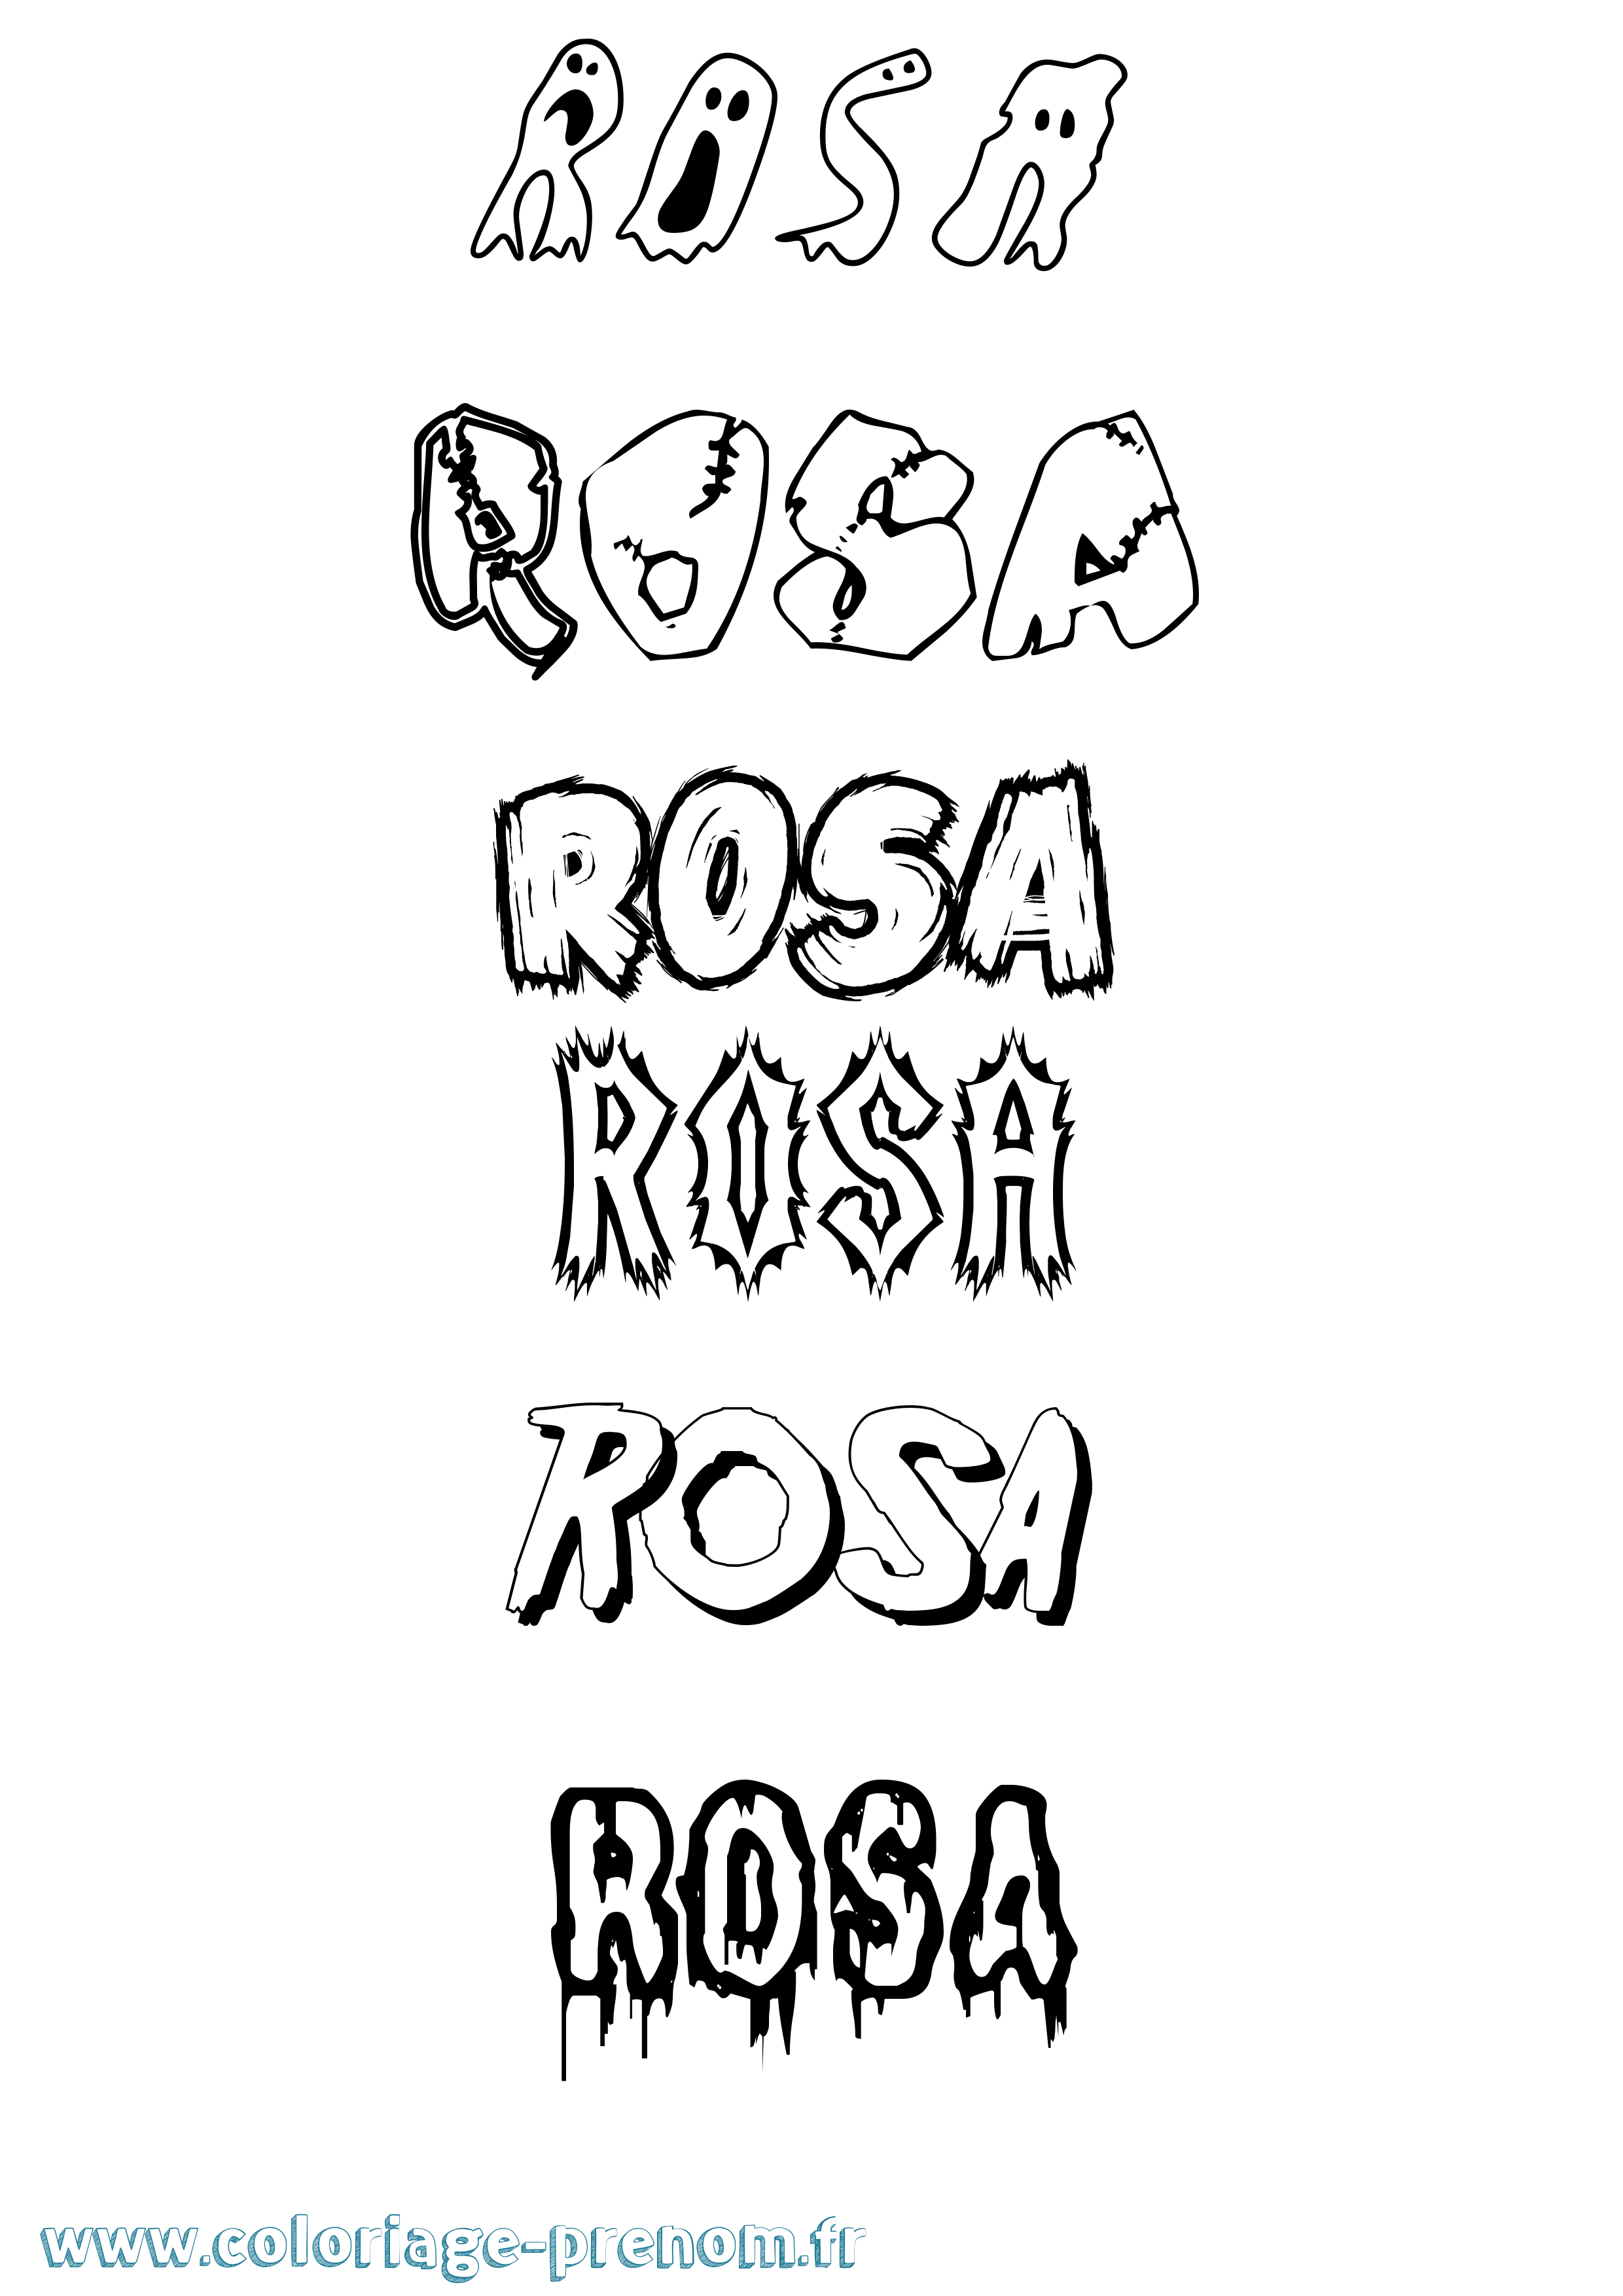 Coloriage prénom Rosa Frisson